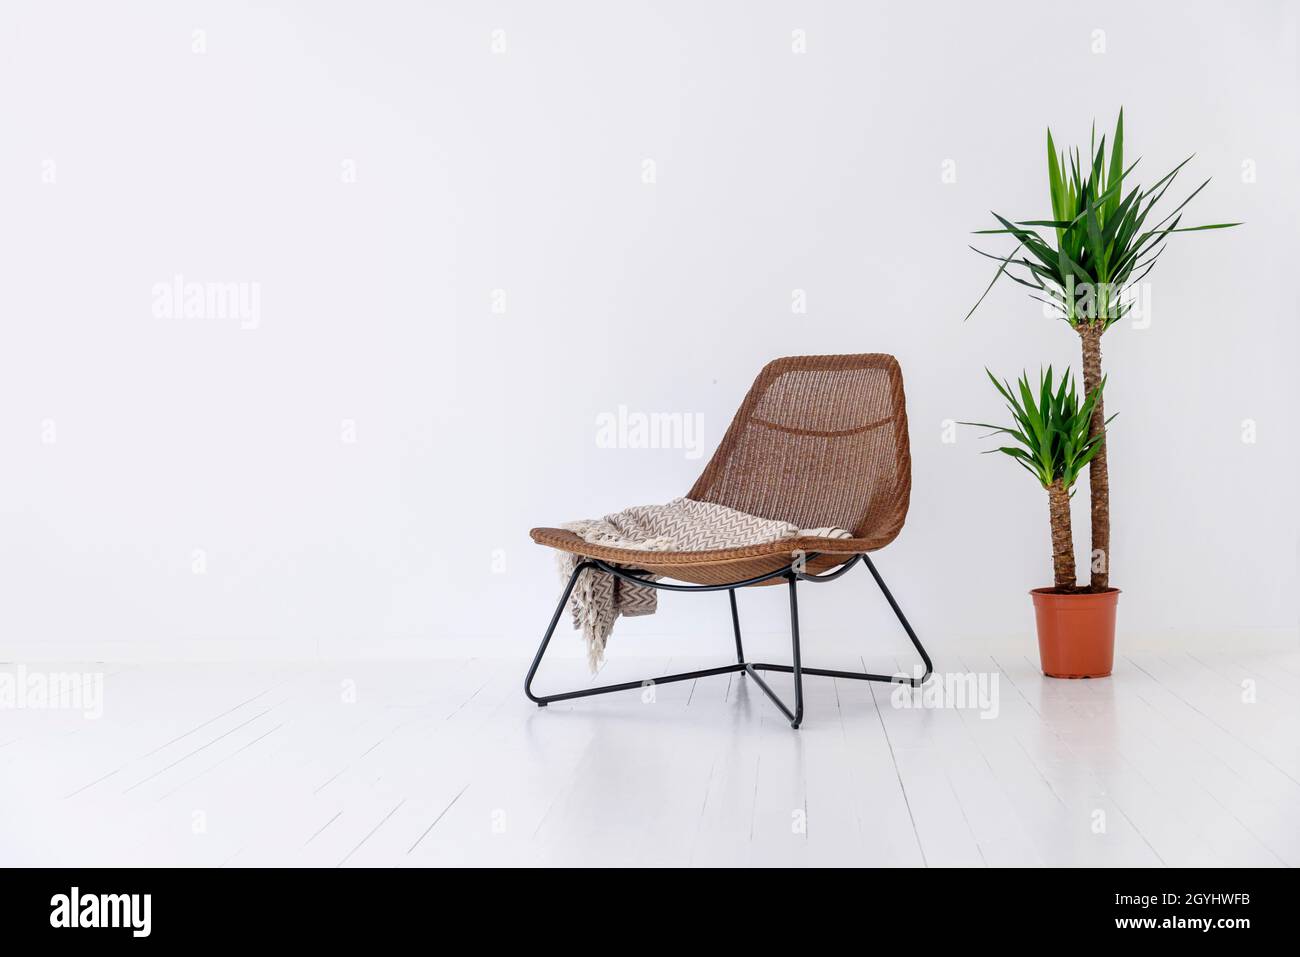 Chaise moderne et plante de maison dans la pièce blanche vide.Décoration intérieure contemporaine.Idée de style immobilier de luxe minimaliste. Banque D'Images